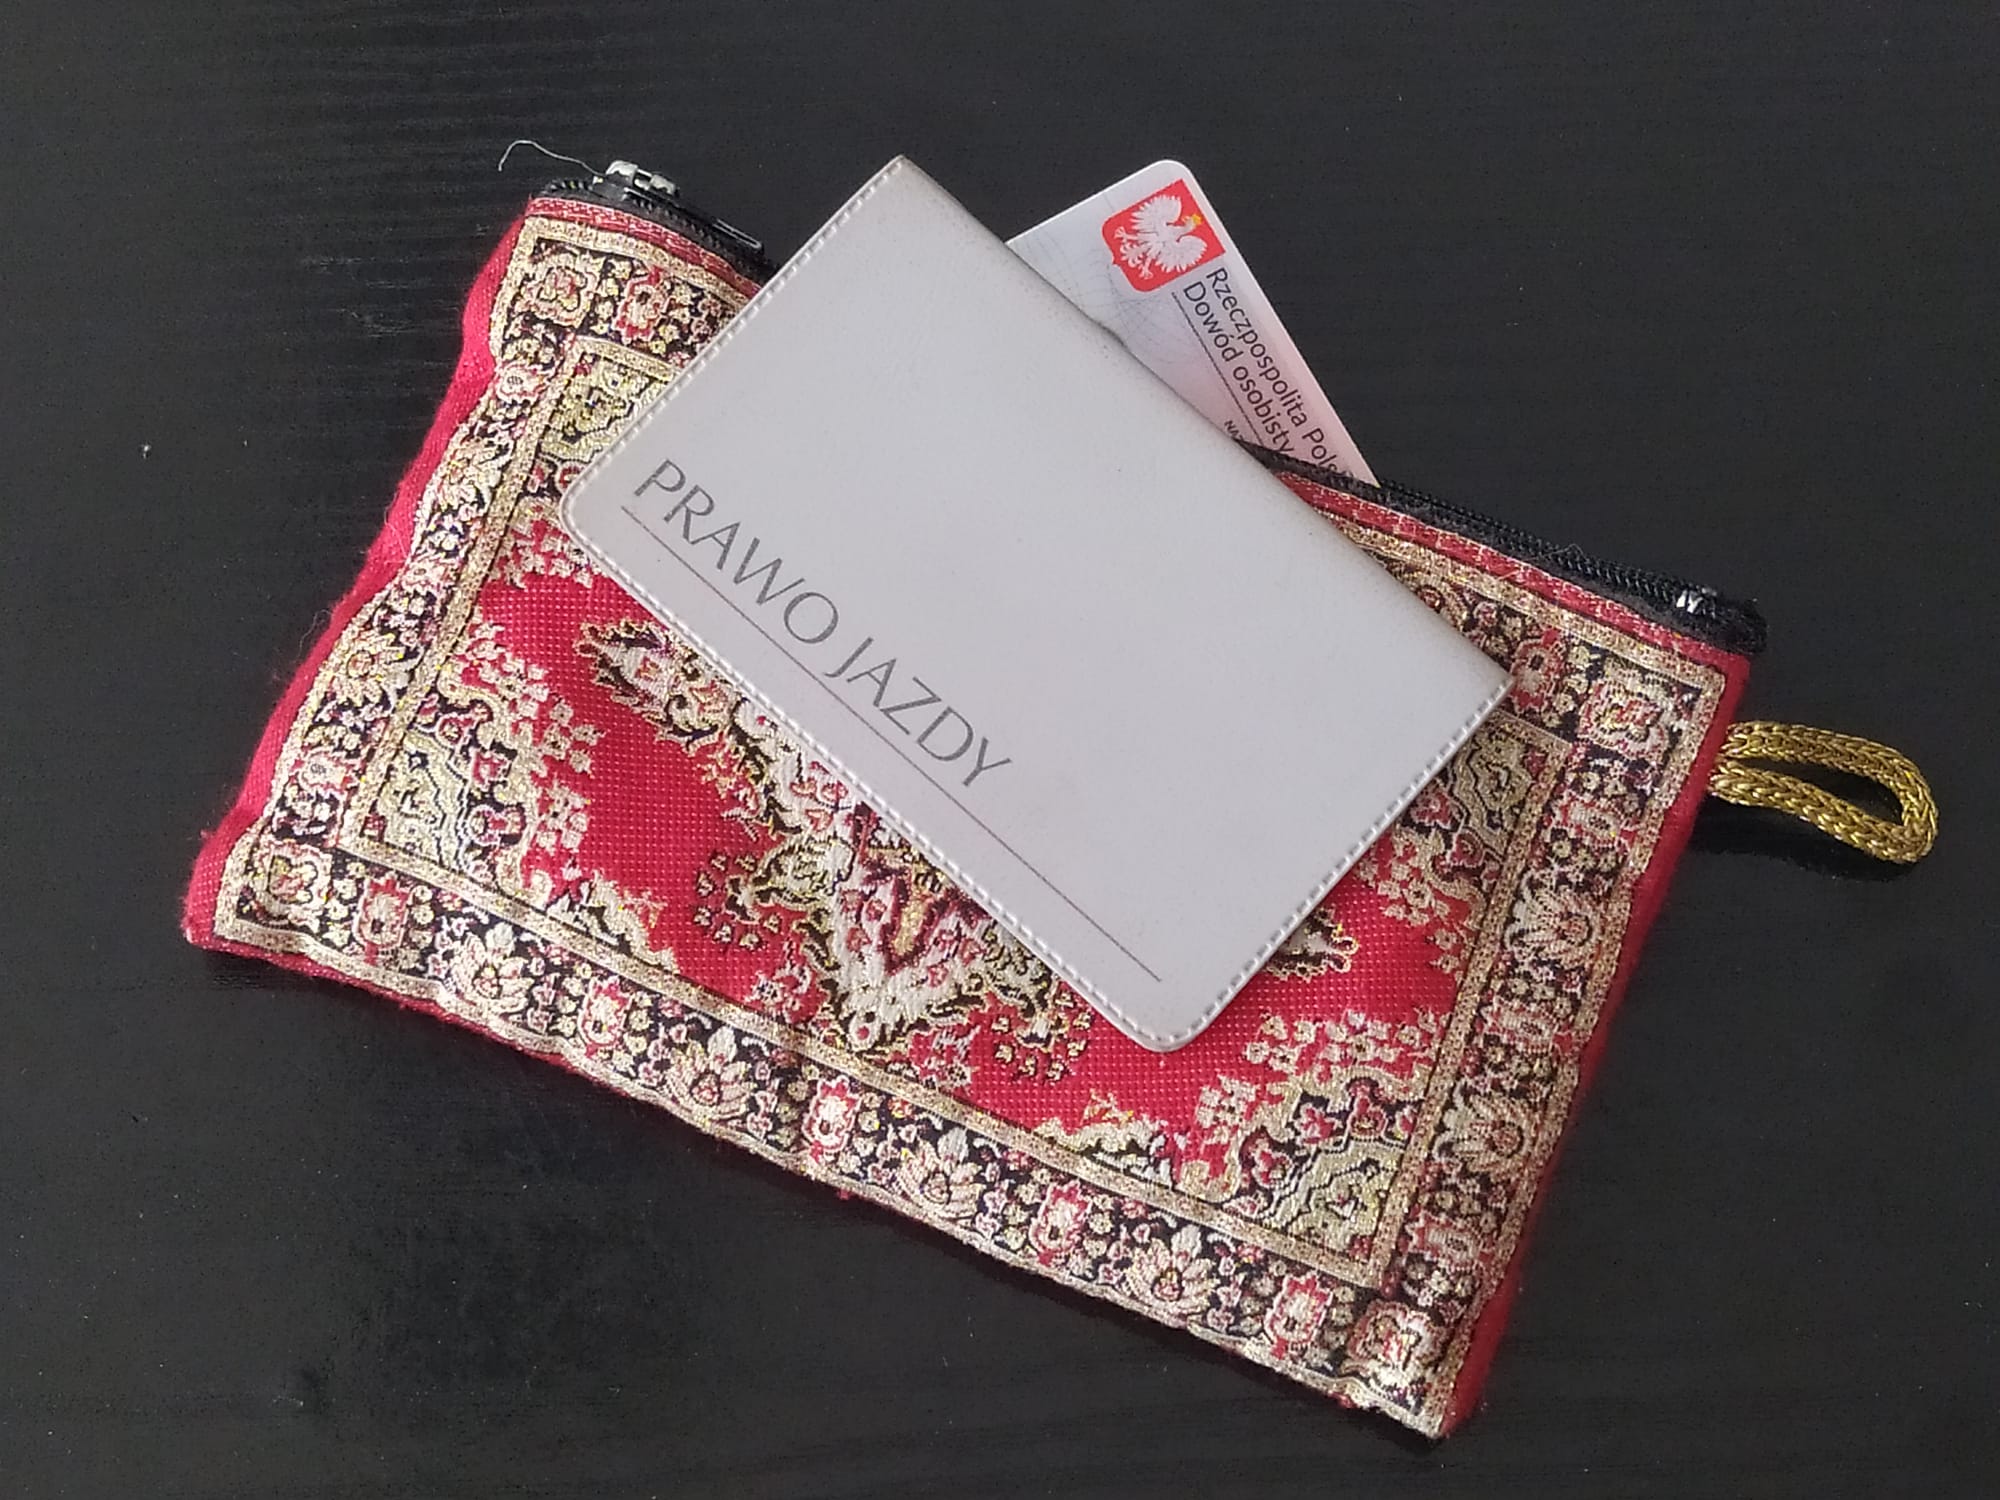 Kolorowy damski portfel z wystającymi zeń dokumentami- zdjęcie ilustracyjne